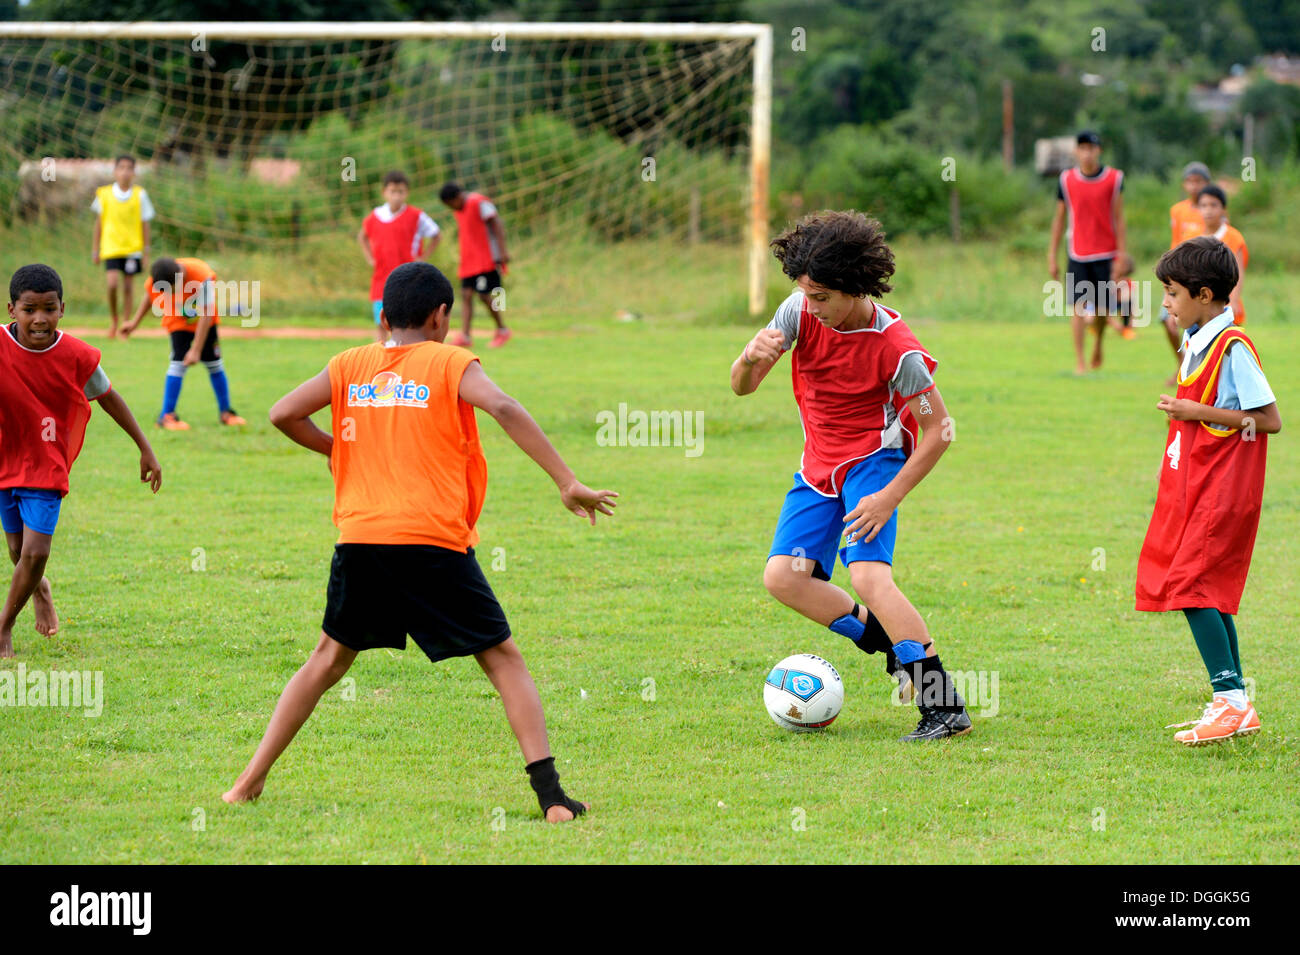 Les jeunes jouent au football, projet social dans une favela, Poxoréo, Mato Grosso, Brésil Banque D'Images